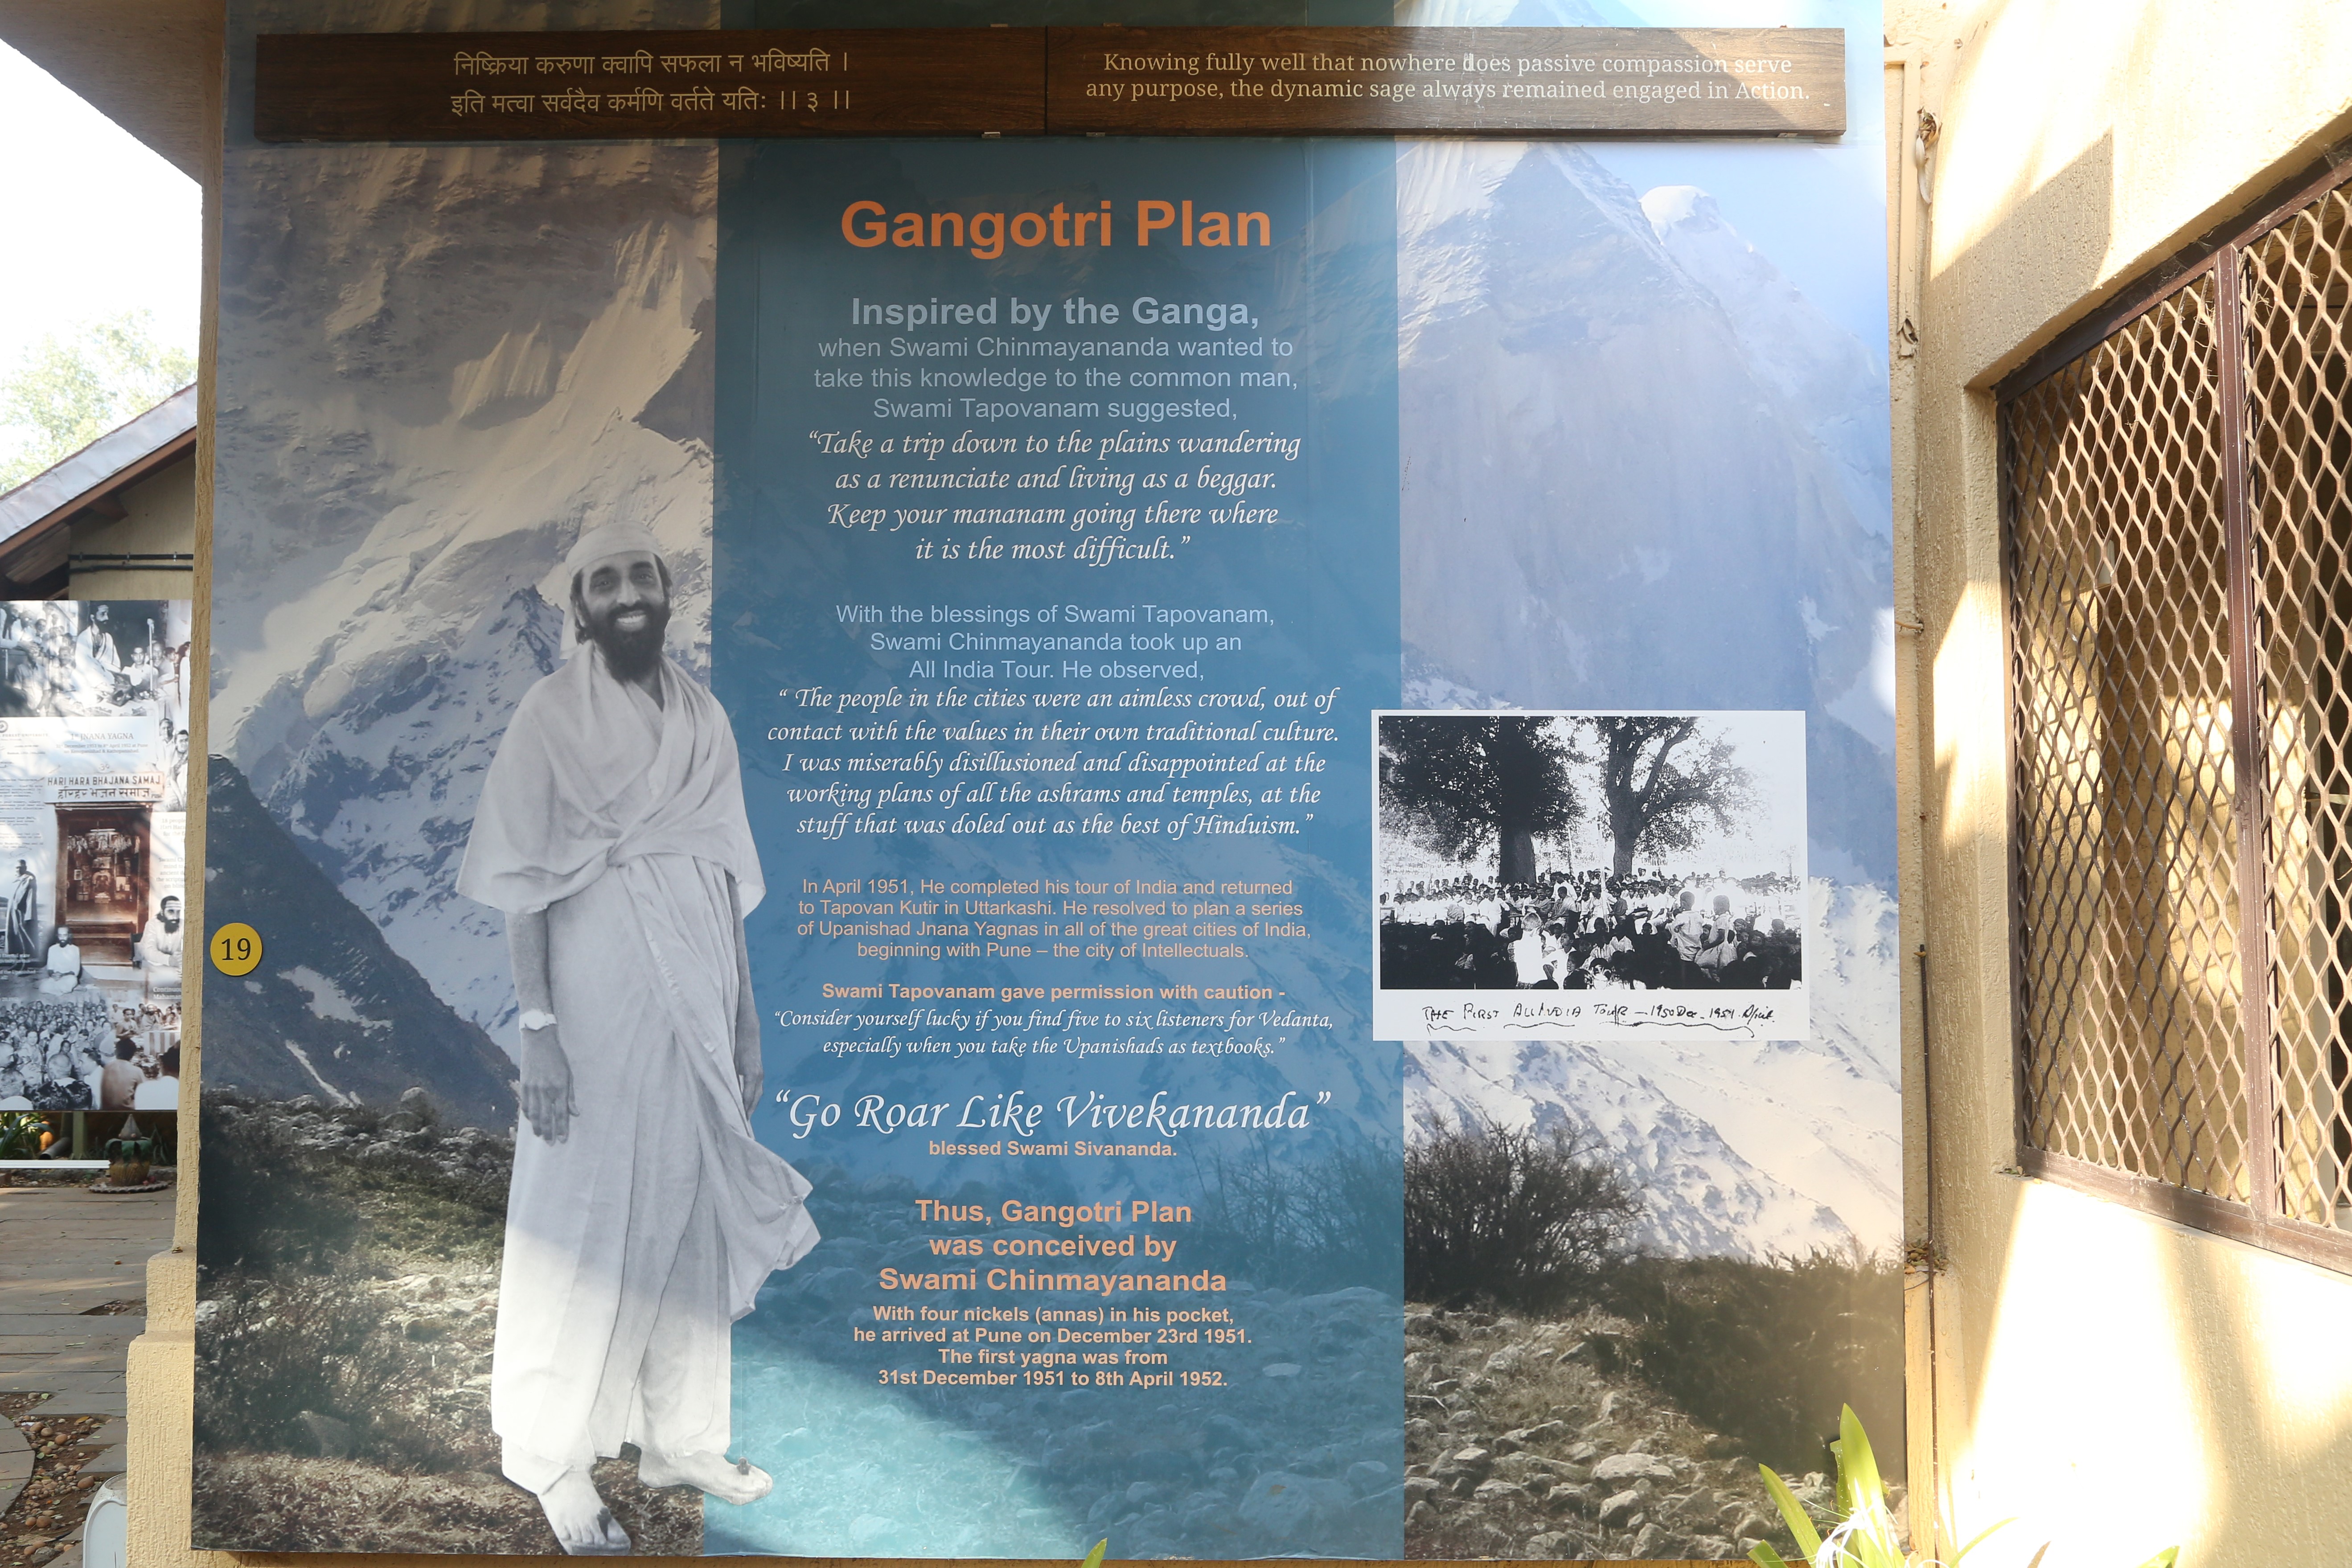 The Gangotri Plan